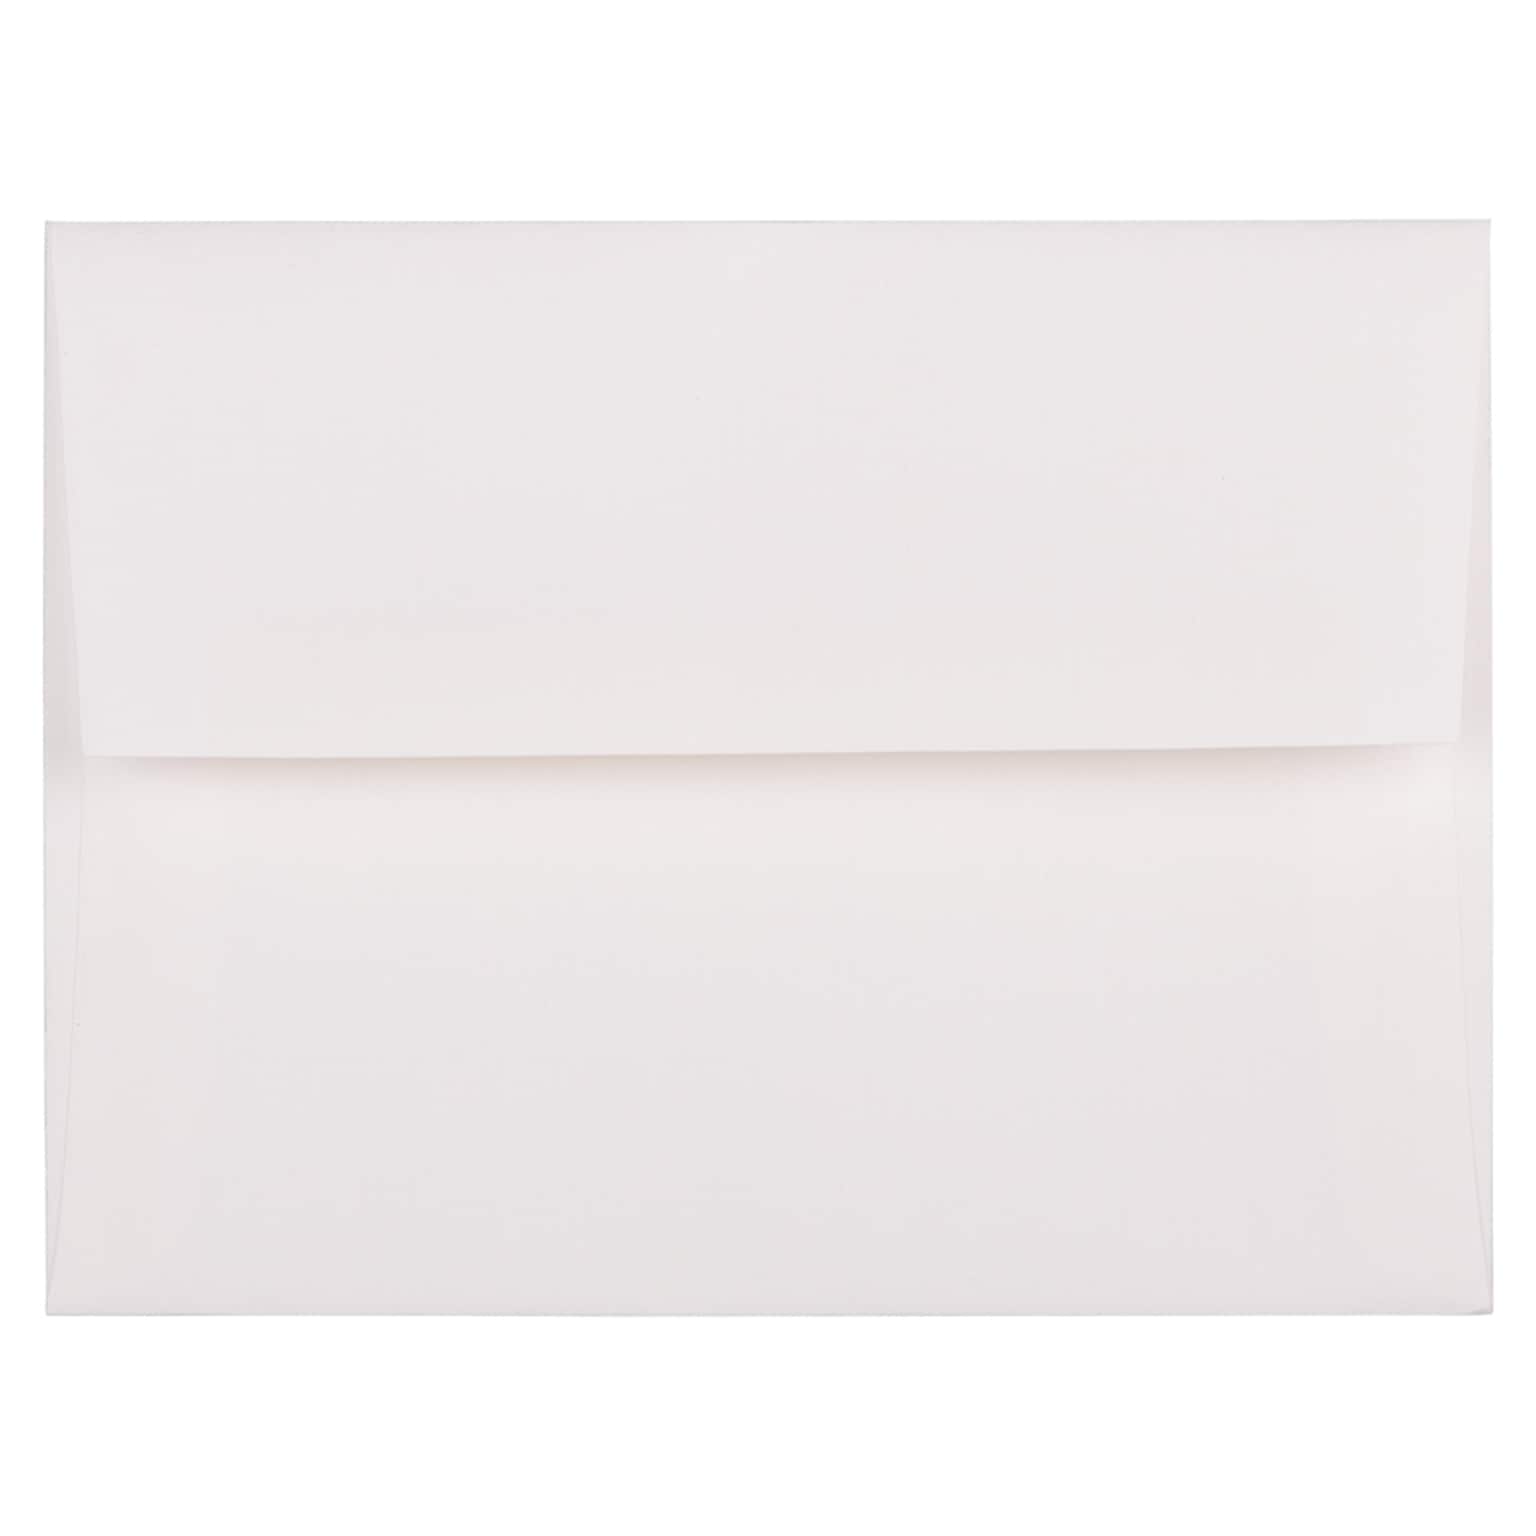 JAM Paper A2 Strathmore Invitation Envelopes, 4.375 x 5.75, Bright White Laid, 25/Pack (99118)